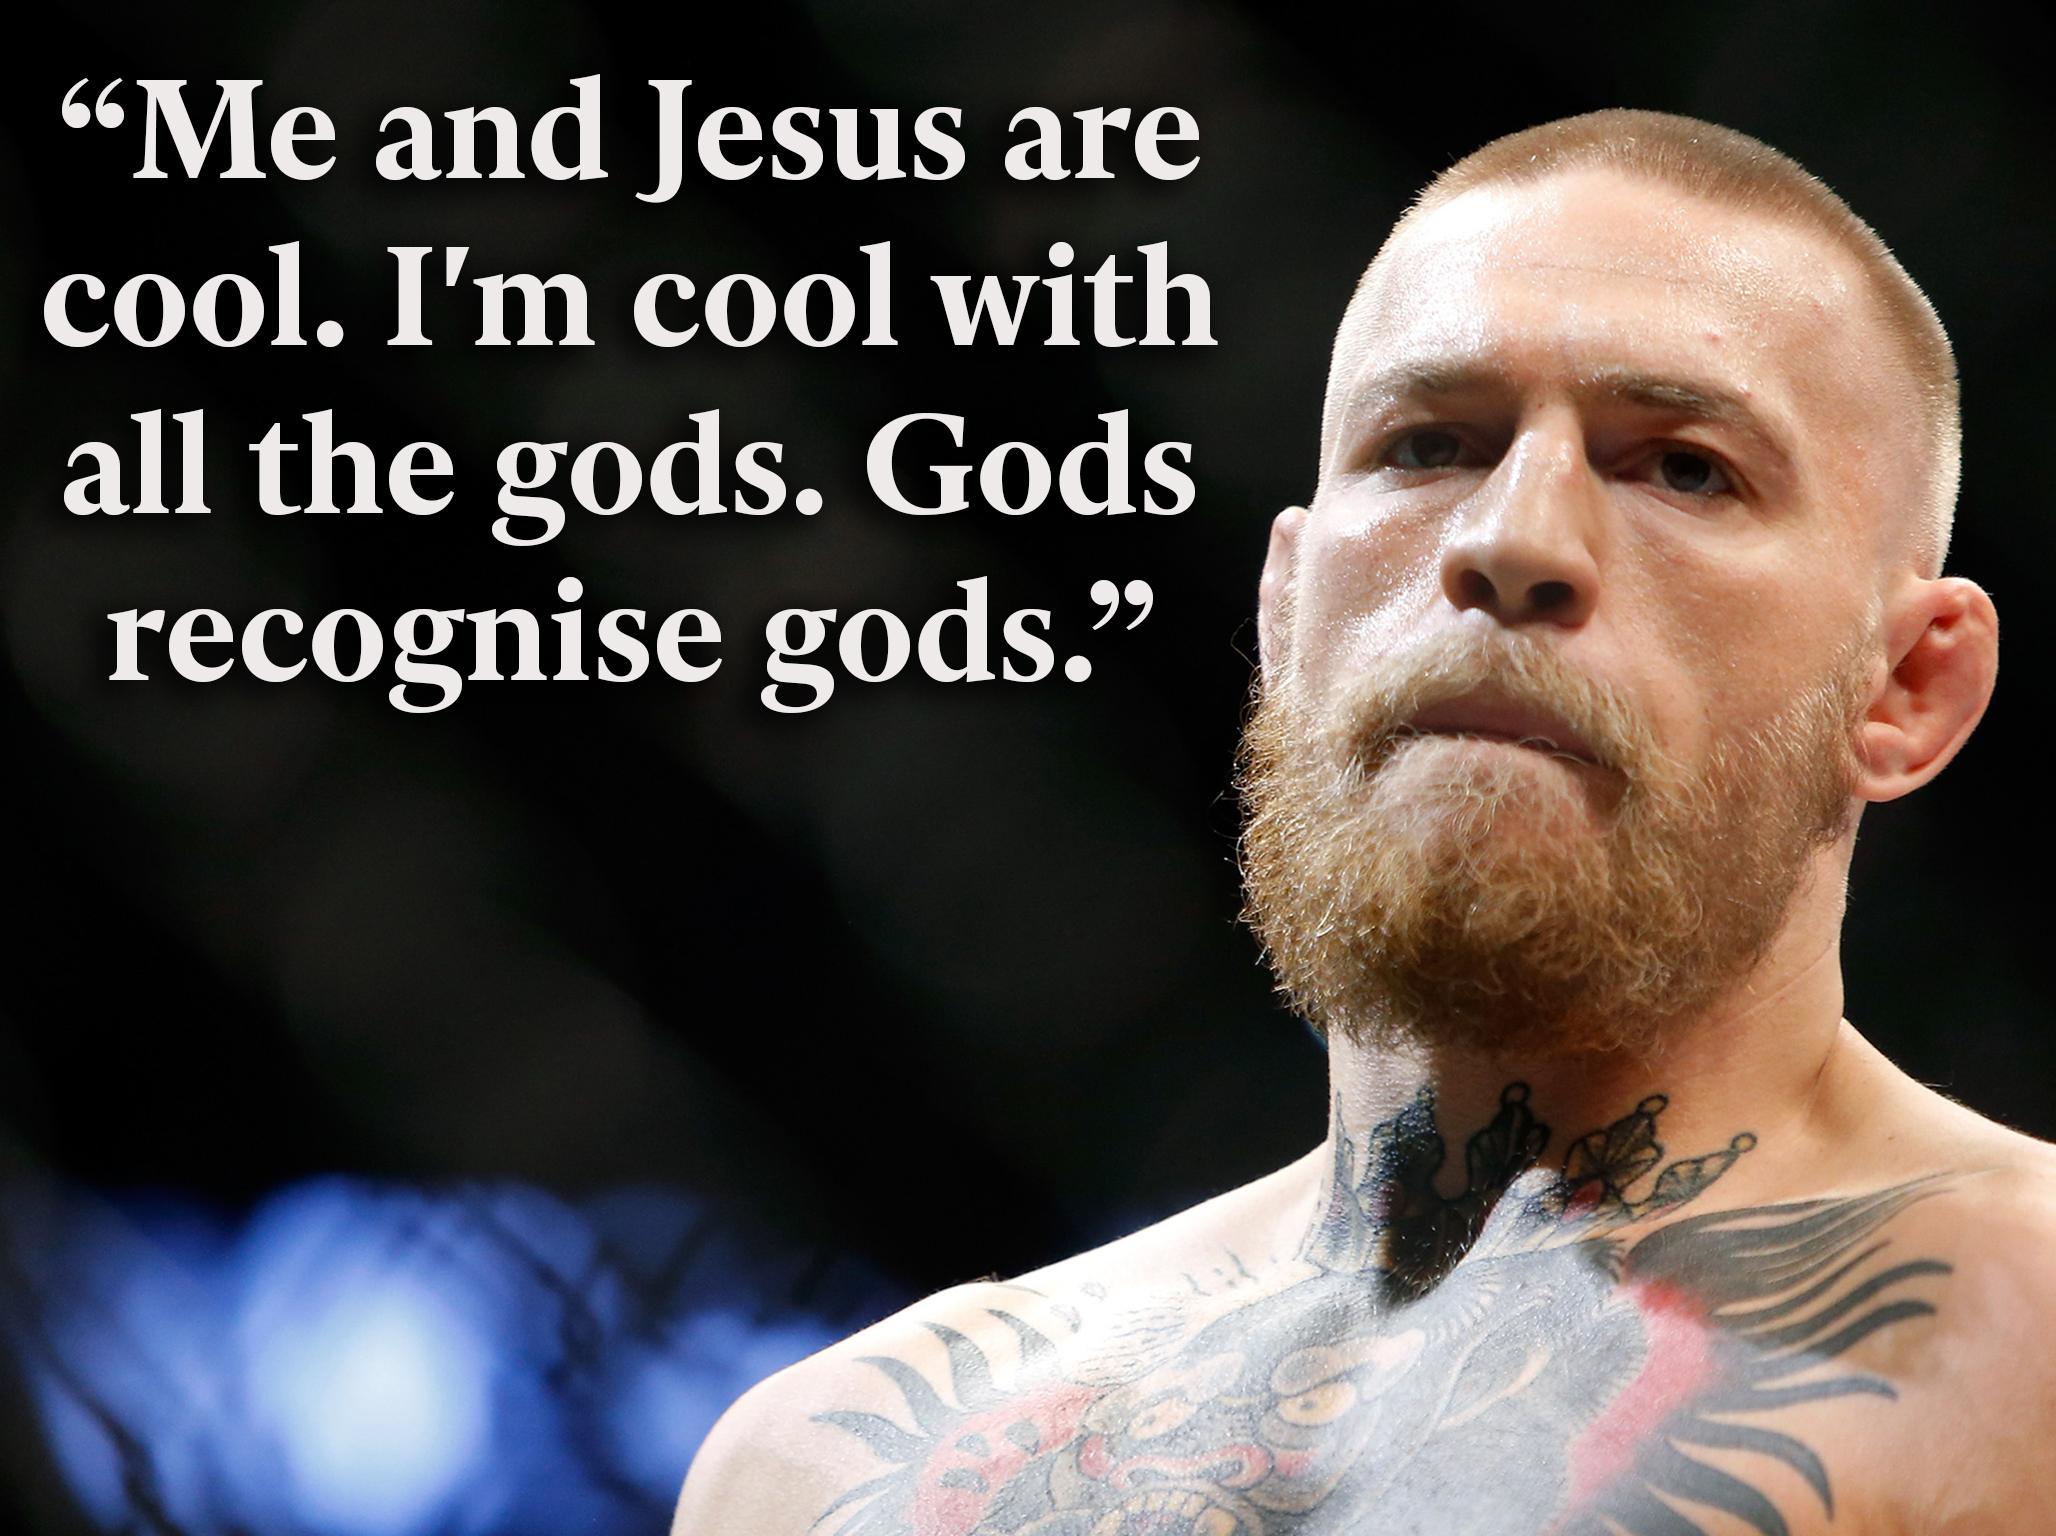 Verwonderlijk Conor McGregor: The controversial UFC star in his own words as he OW-81